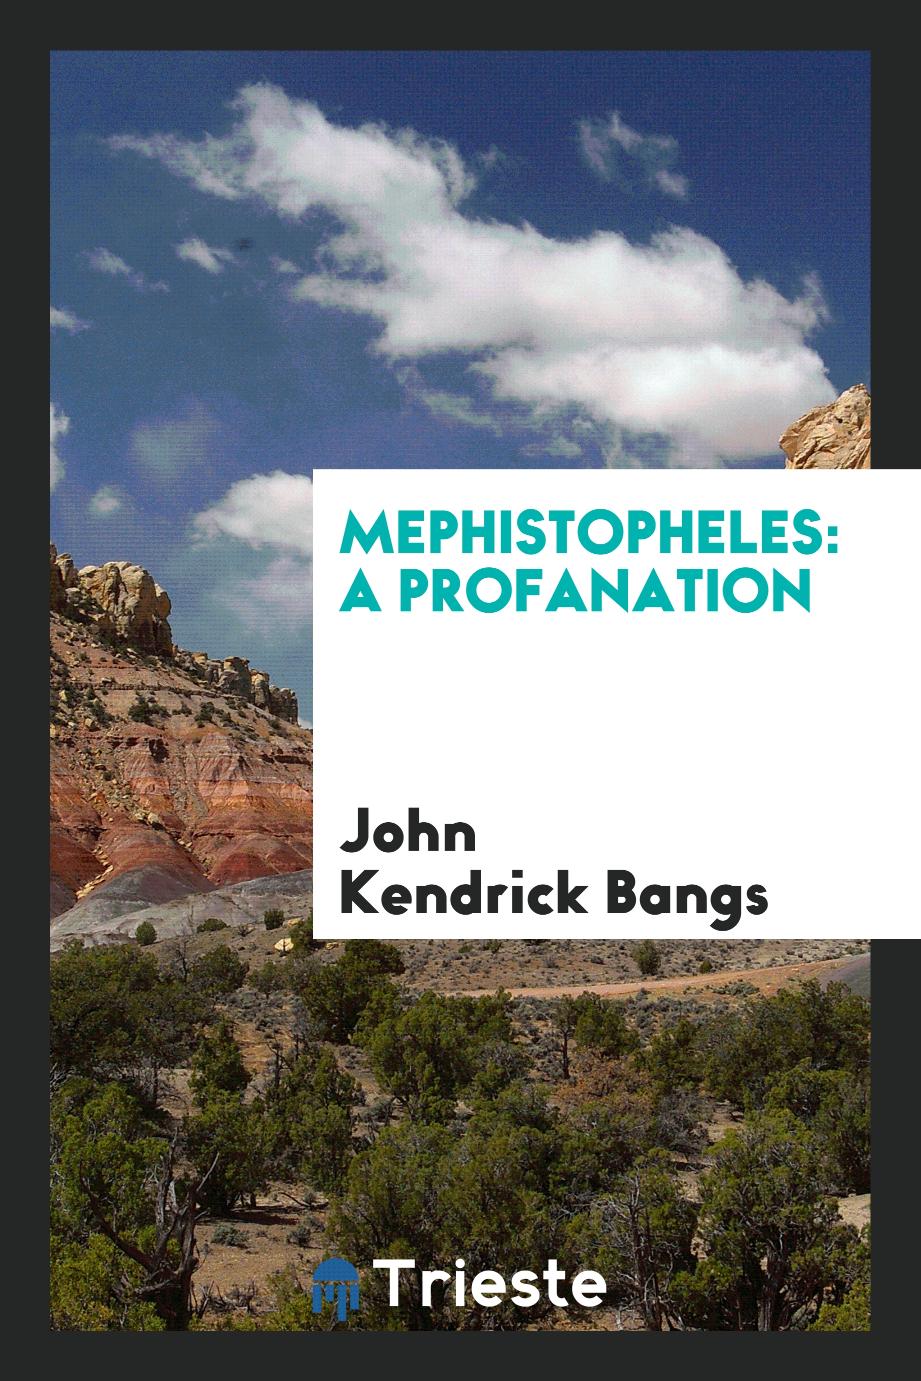 Mephistopheles: A Profanation